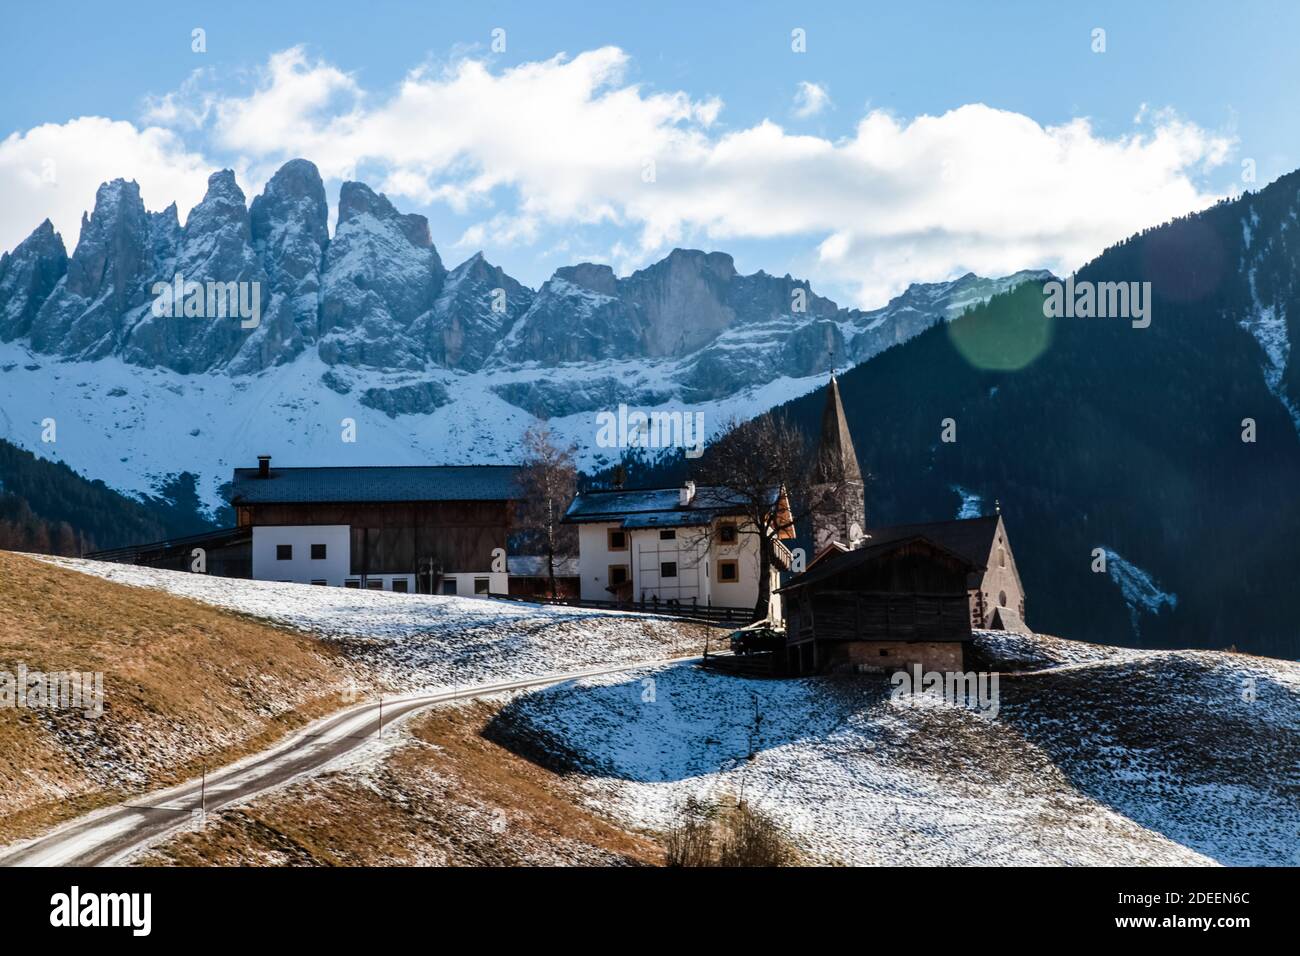 Berühmter Ort der Welt, Santa Maddalena Dorf mit magischen Dolomiten Berge im Hintergrund. Winterlandschaft. Stockfoto